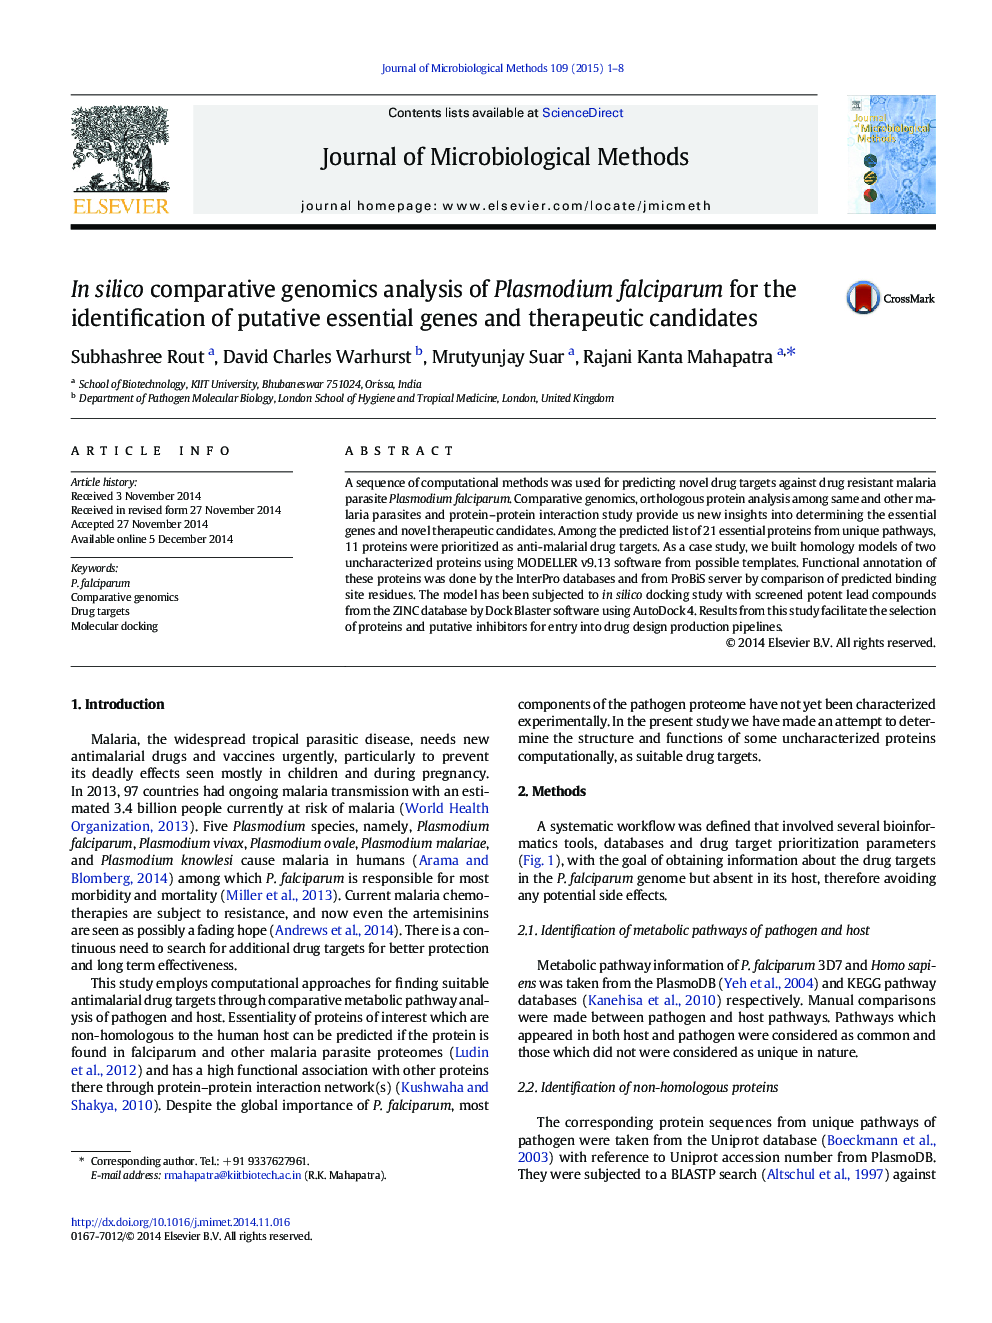 در تجزیه و تحلیل ژنتیک مقایسه سیلیکون پلاسمودیوم فالسیپاروم برای شناسایی ژن های ضروری و کاندیداهای درمانی 